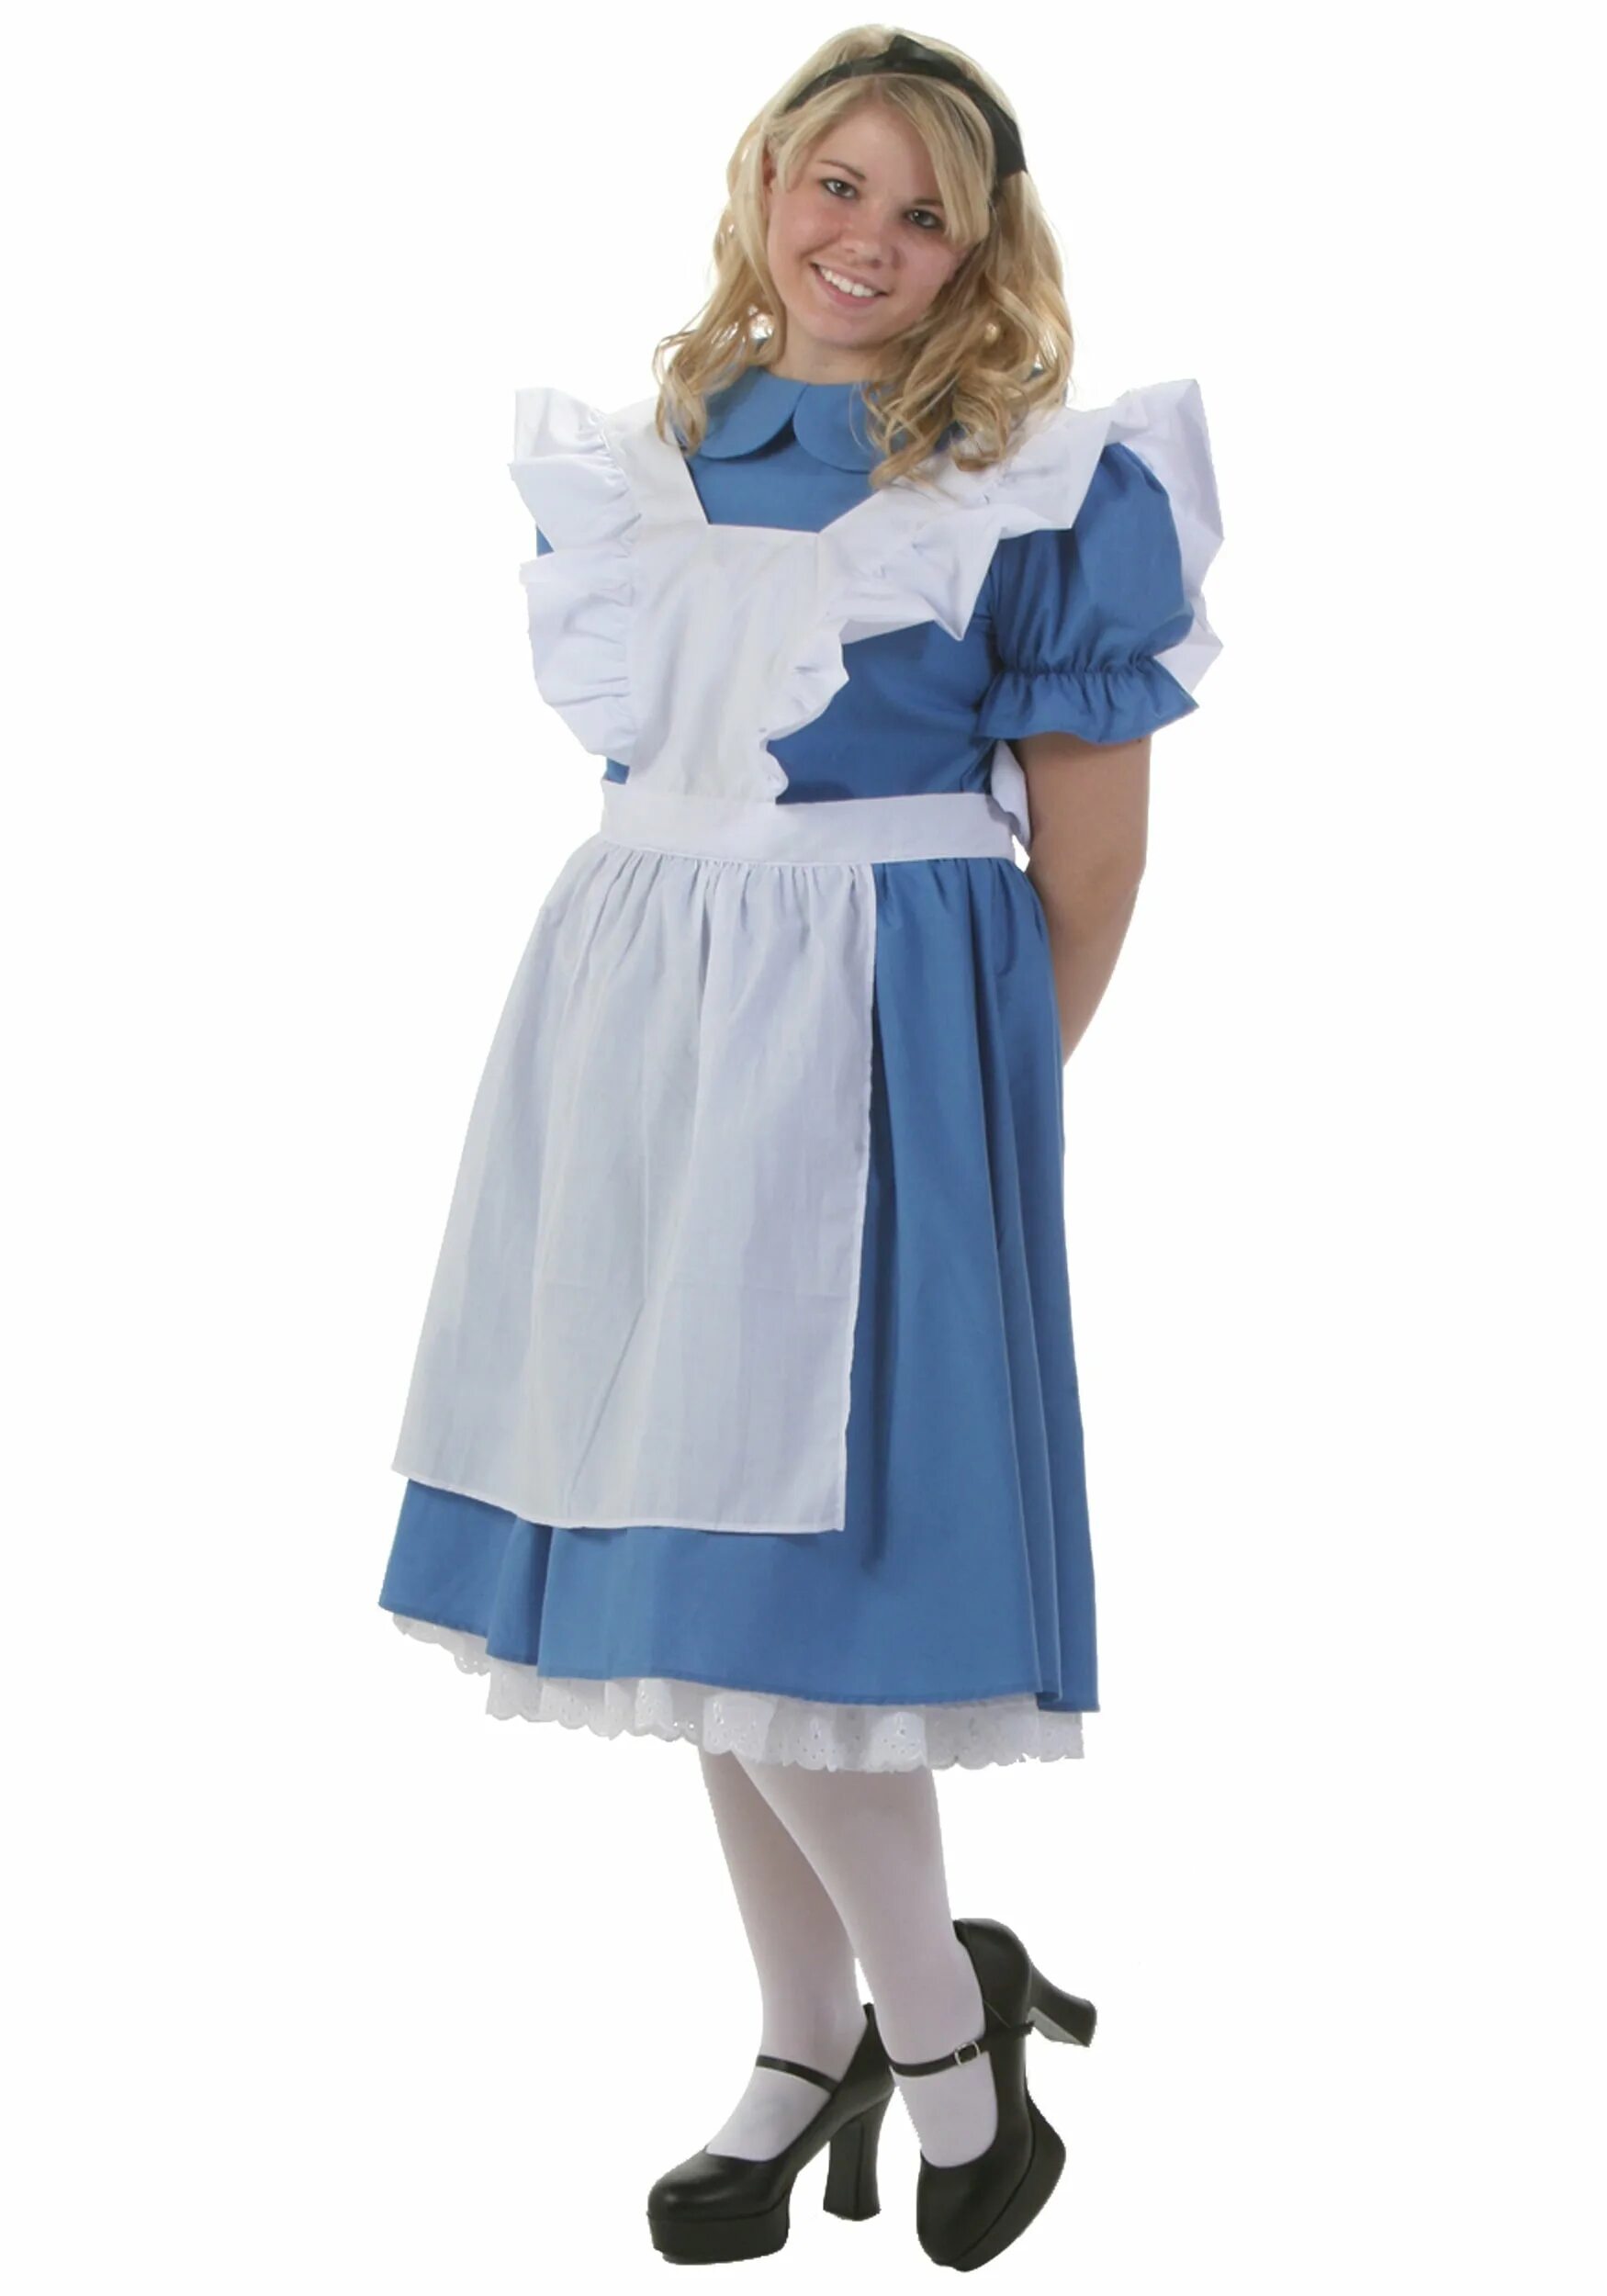 2 алисы плюс 3. Алиса плюс. Костюм Алисы в стране чудес. Платье Алисы в стране чудес. Детский костюм Алиса на белом фоне.